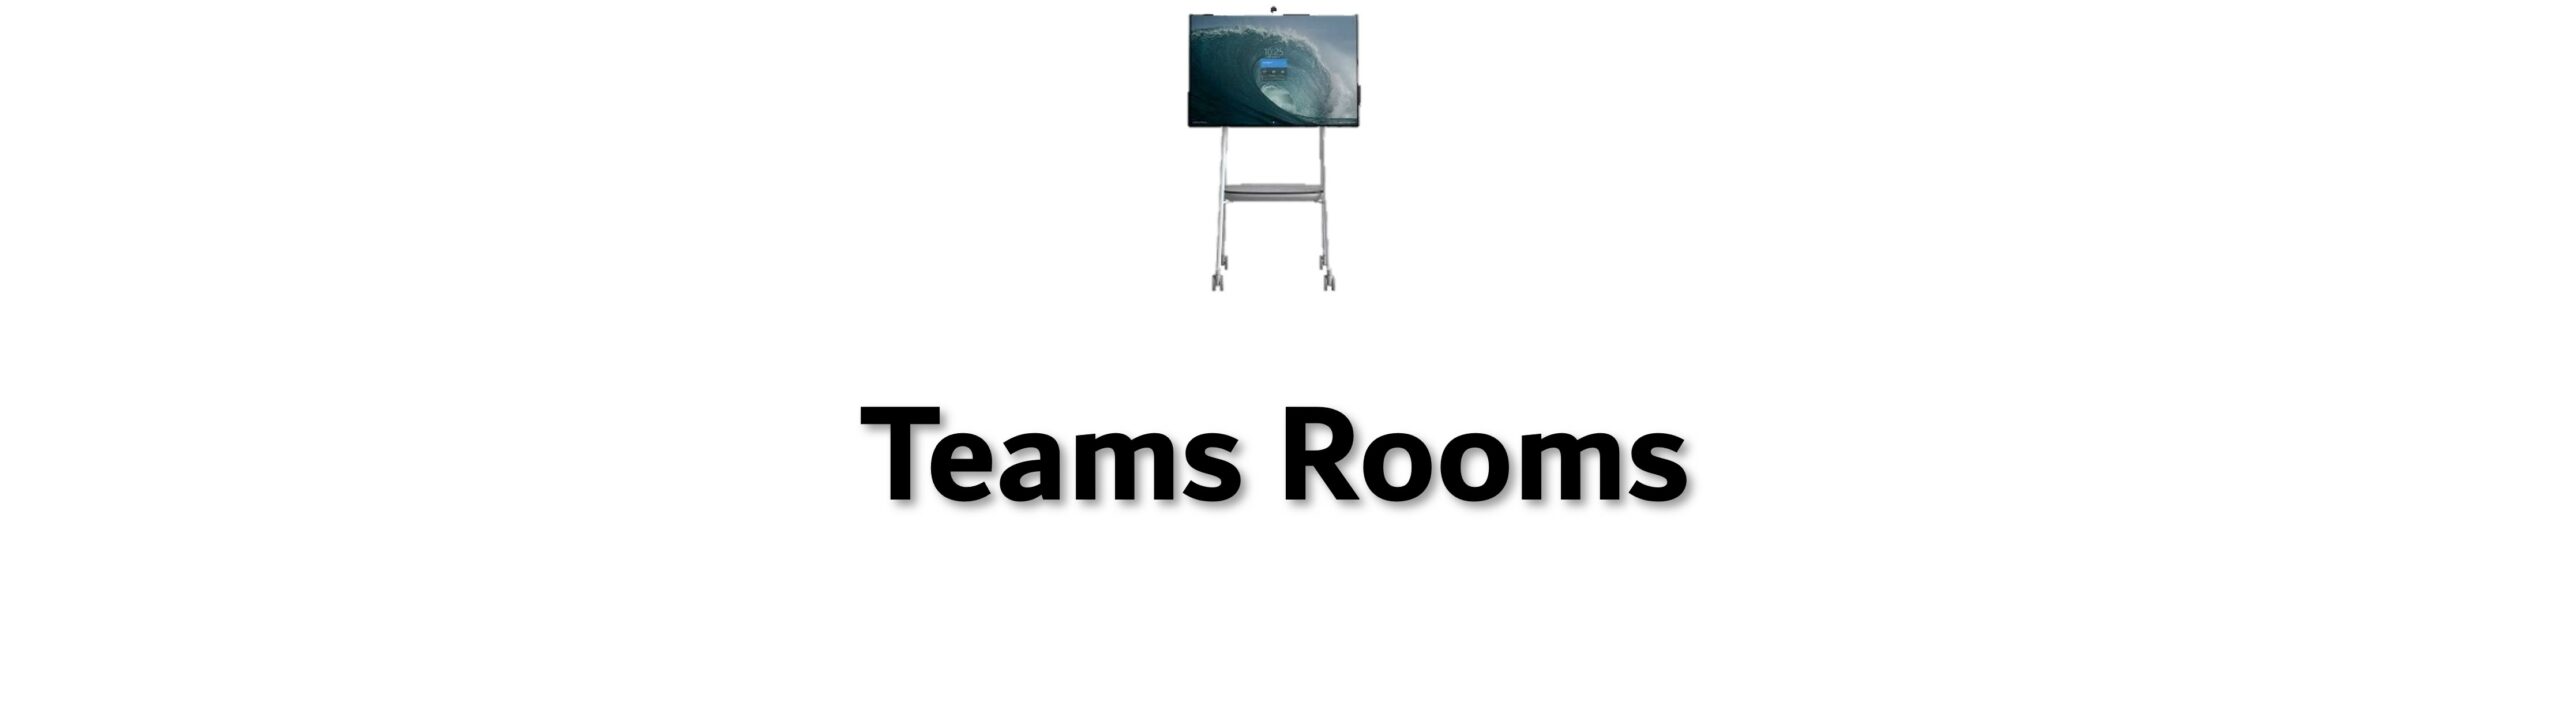 Teams Rooms